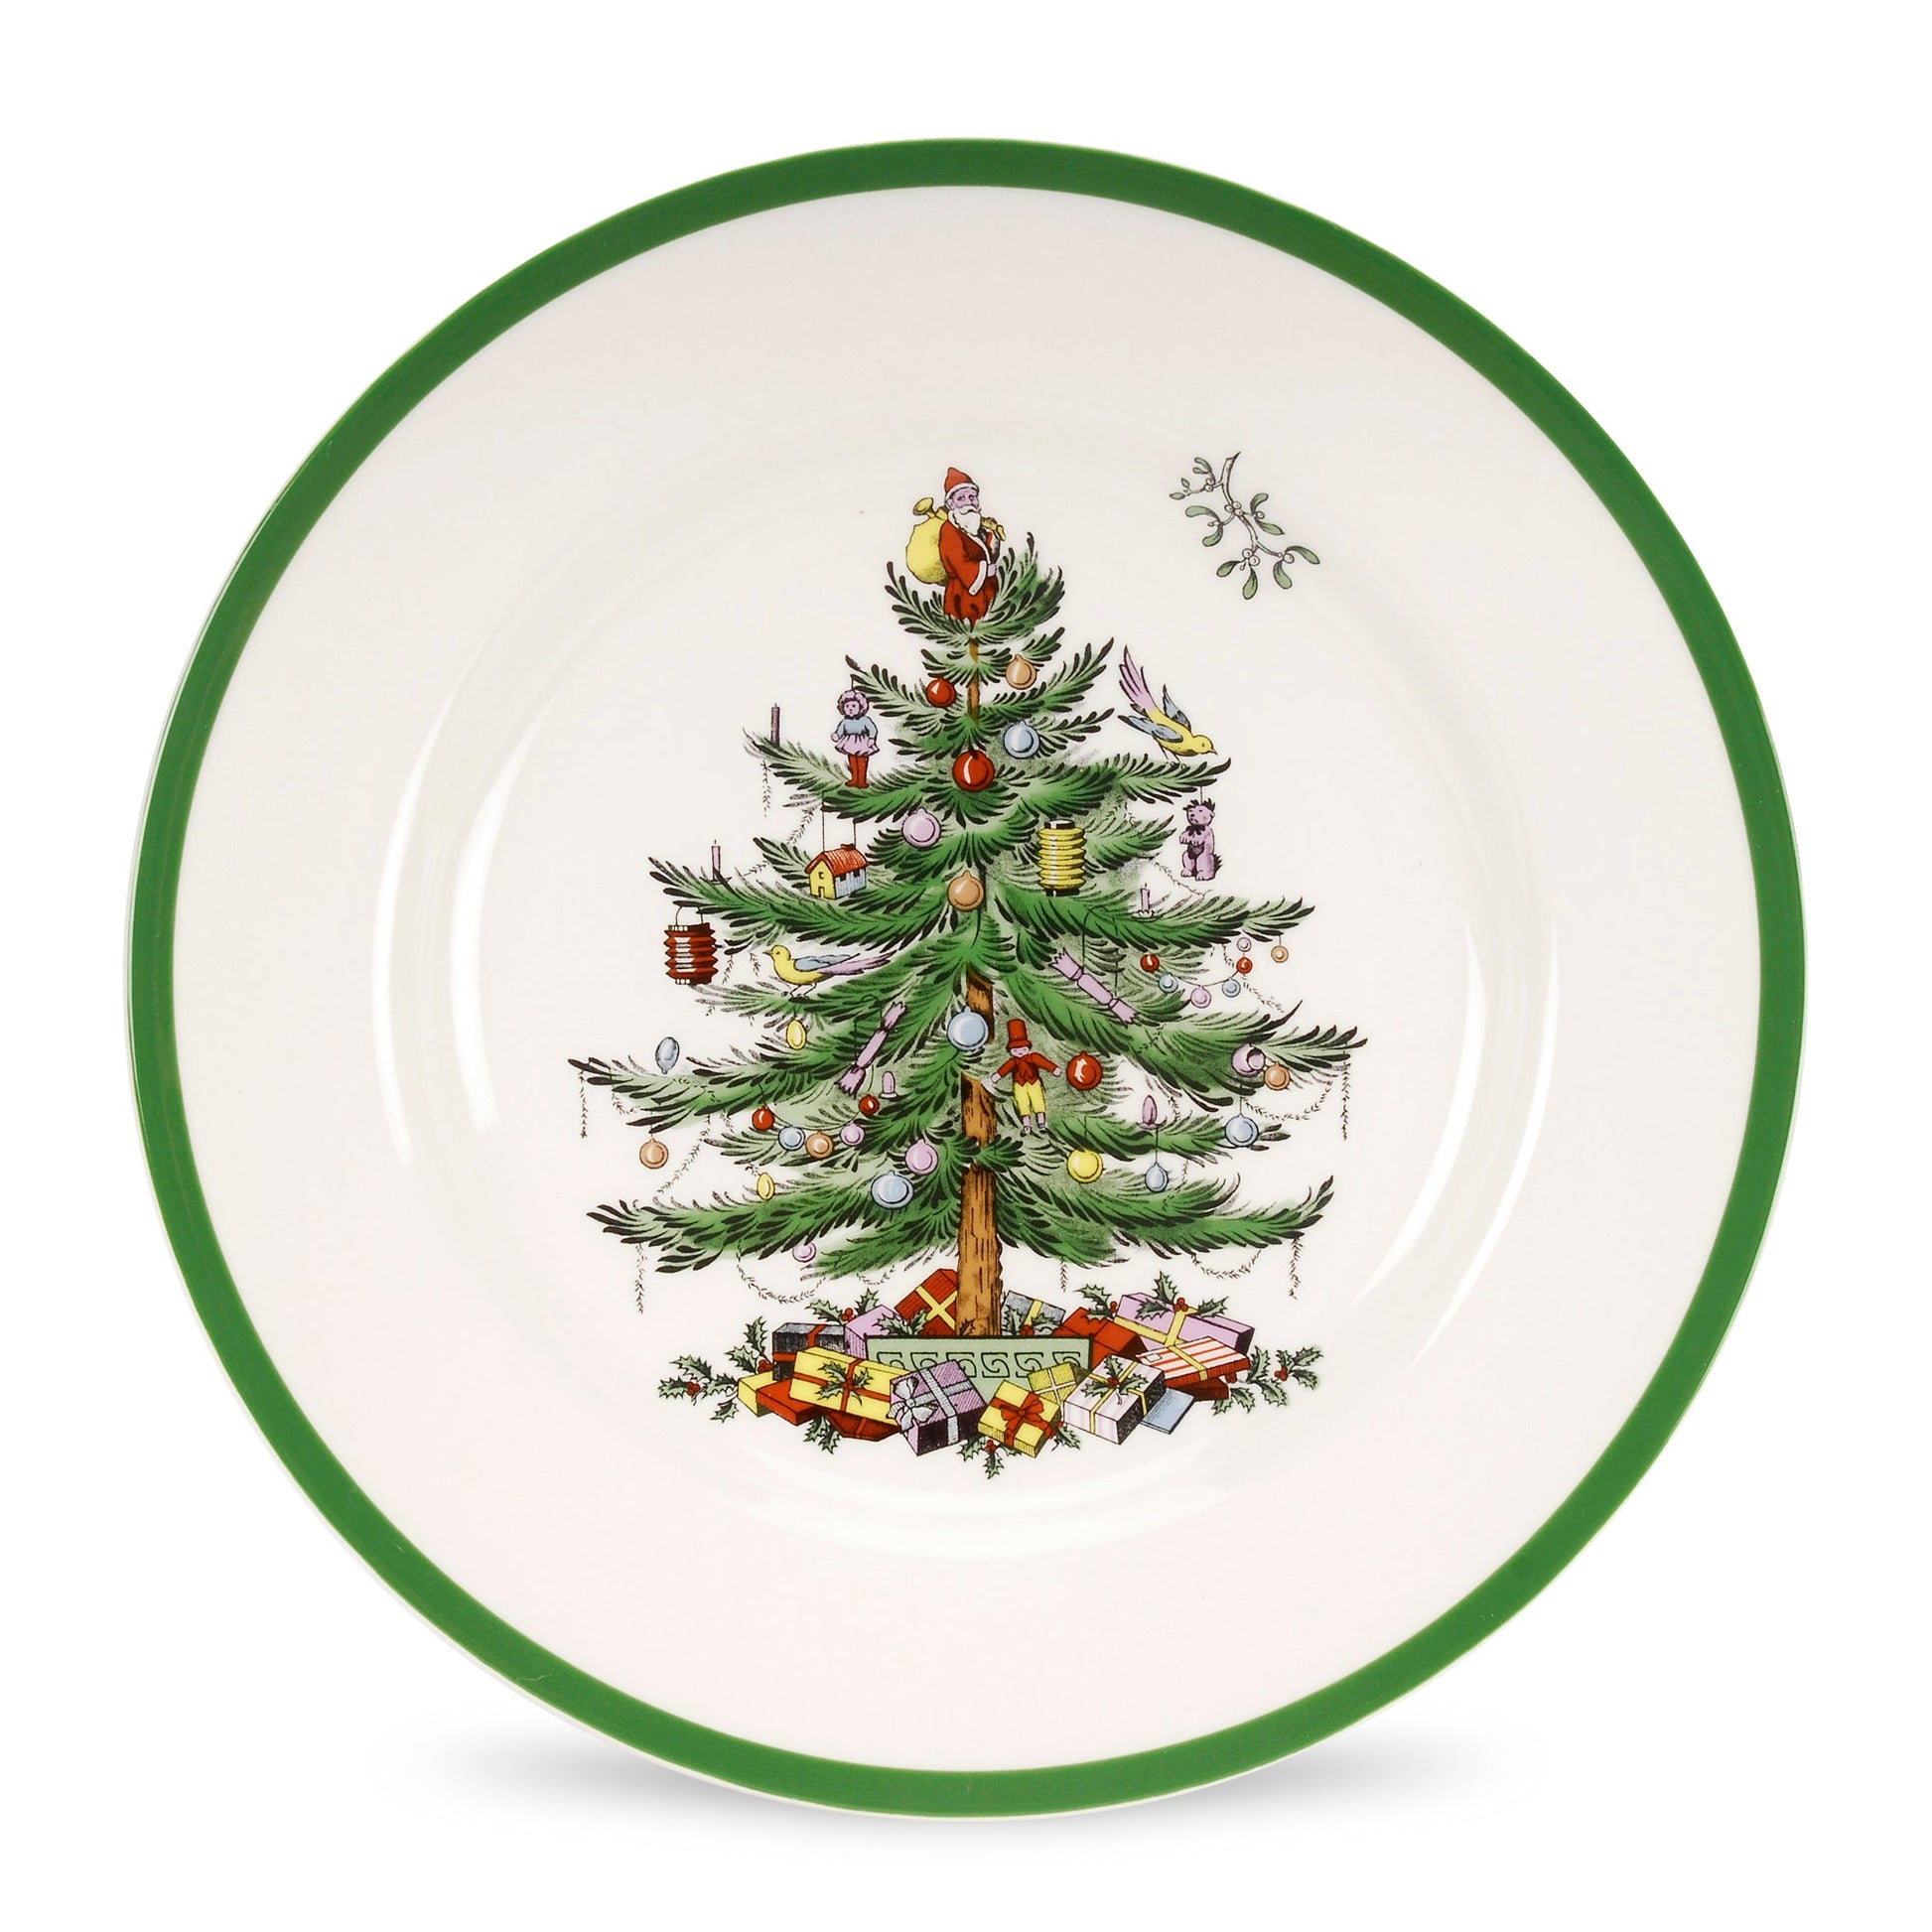 Spode Christmas Tree Set of 4 Dinner Plates - Shoppedeals